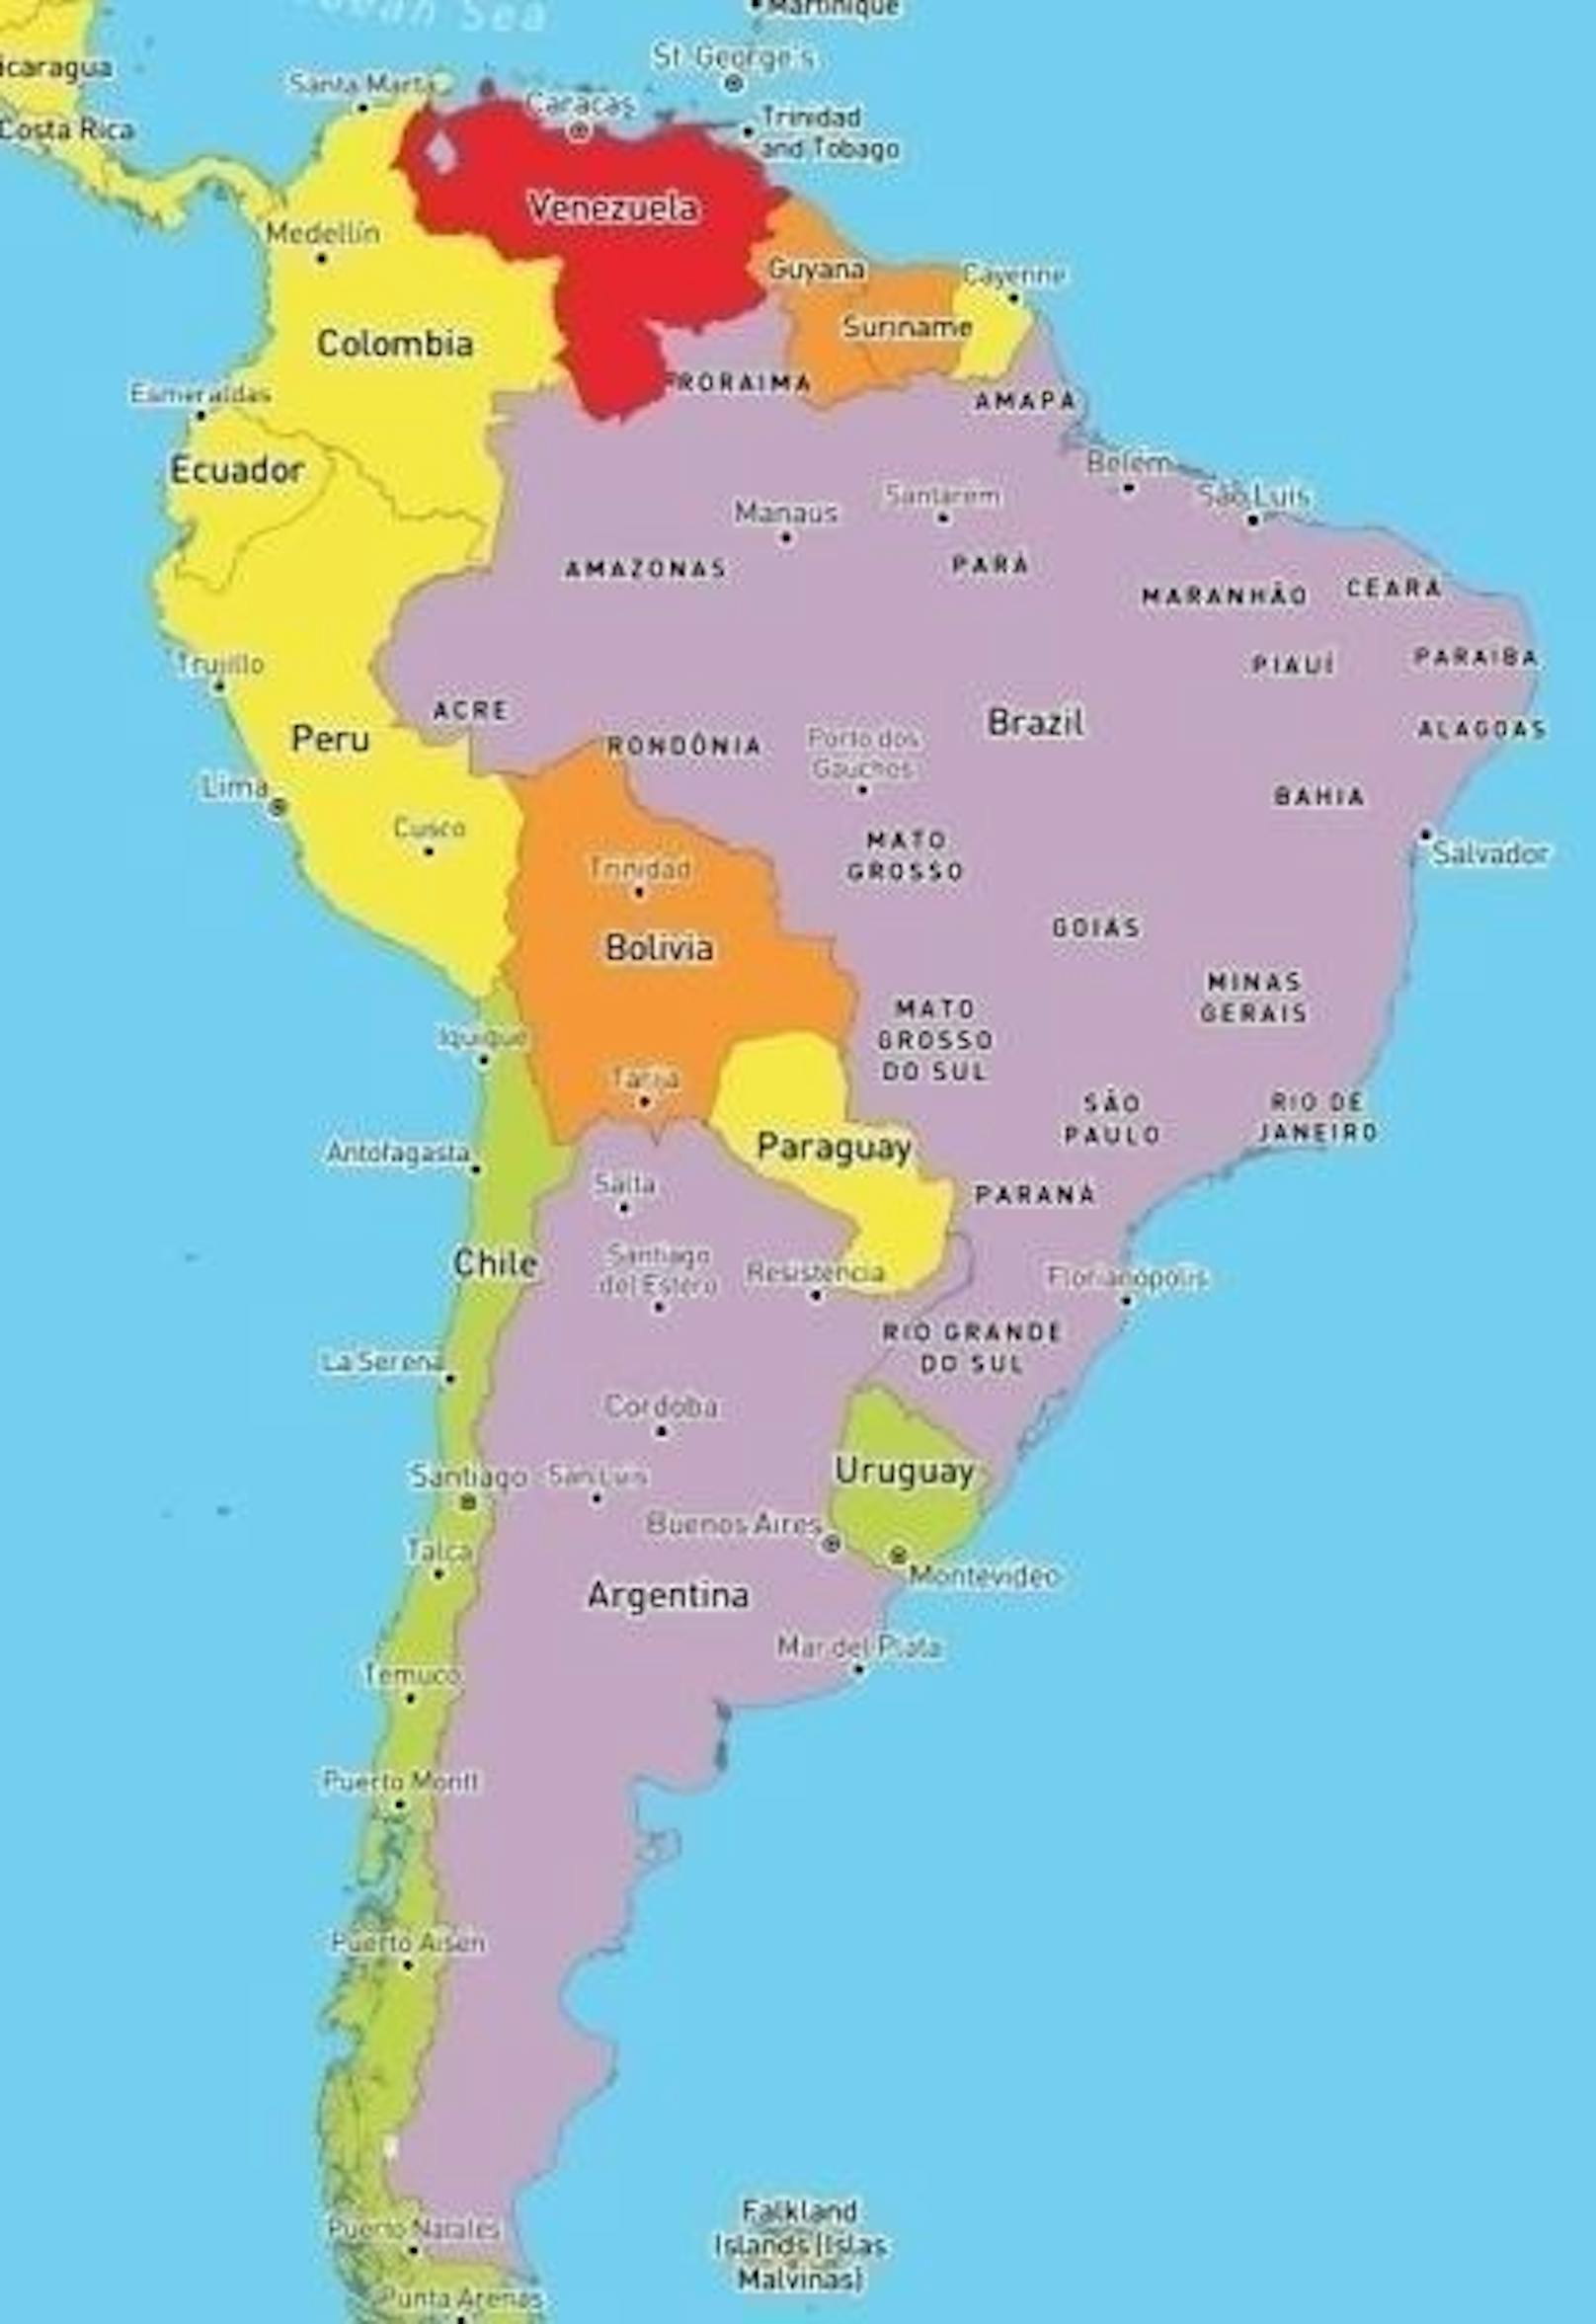 In rot eingefärbten Ländern wie Venezuela gilt das Risiko, sich eine Infektion zu holen, als hoch. In den violett eingefärbten Ländern ist die medizinische Versorgung vorhanden, aber nur in bestimmten Gebieten und Städten zugänglich.